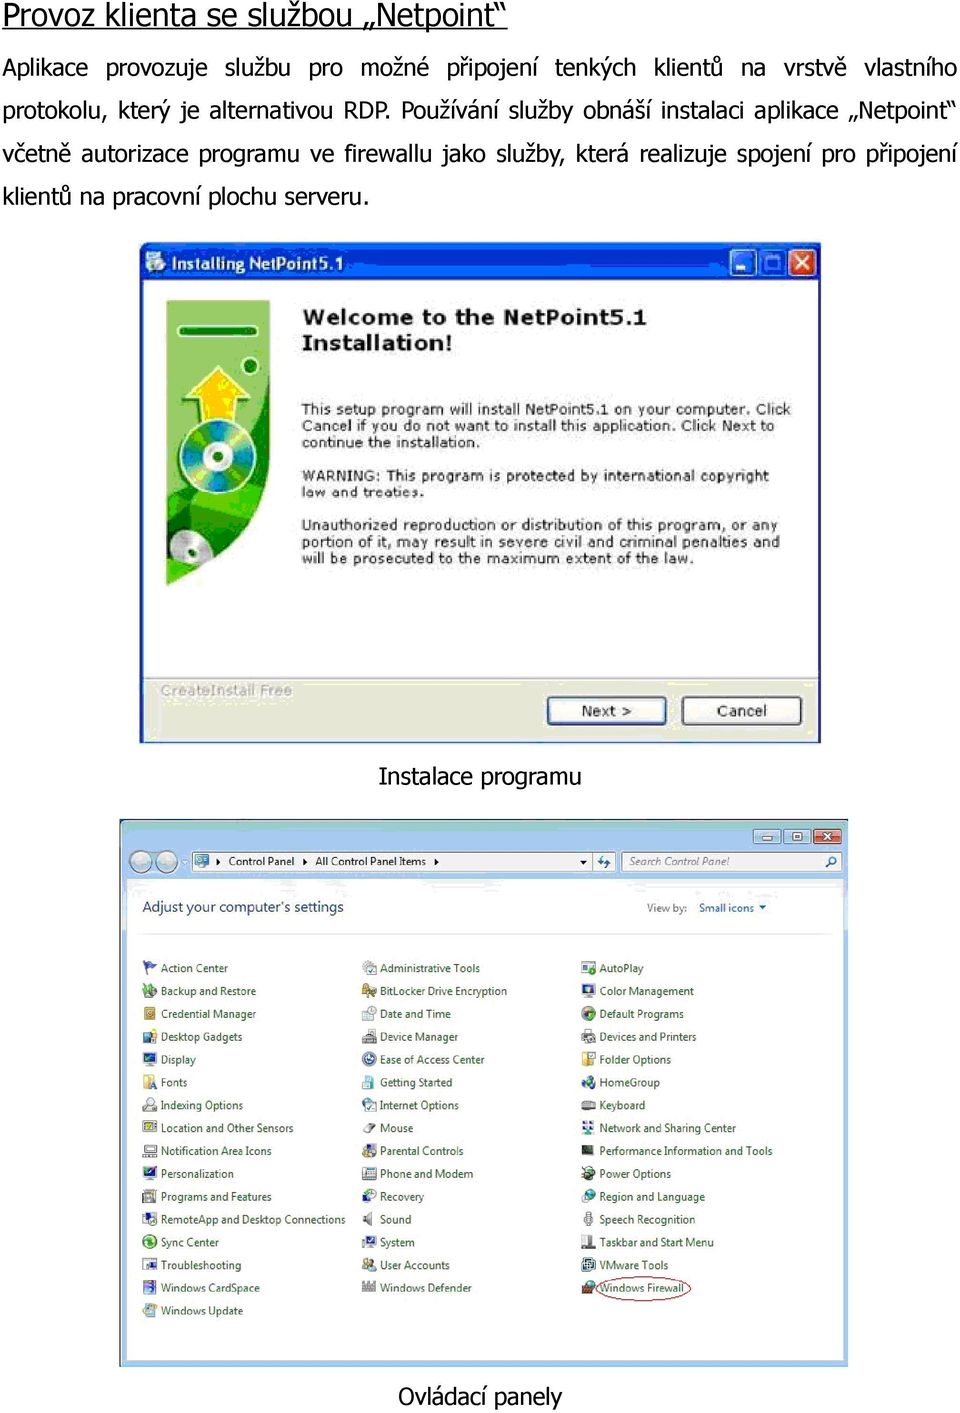 Používání služby obnáší instalaci aplikace Netpoint včetně autorizace programu ve firewallu